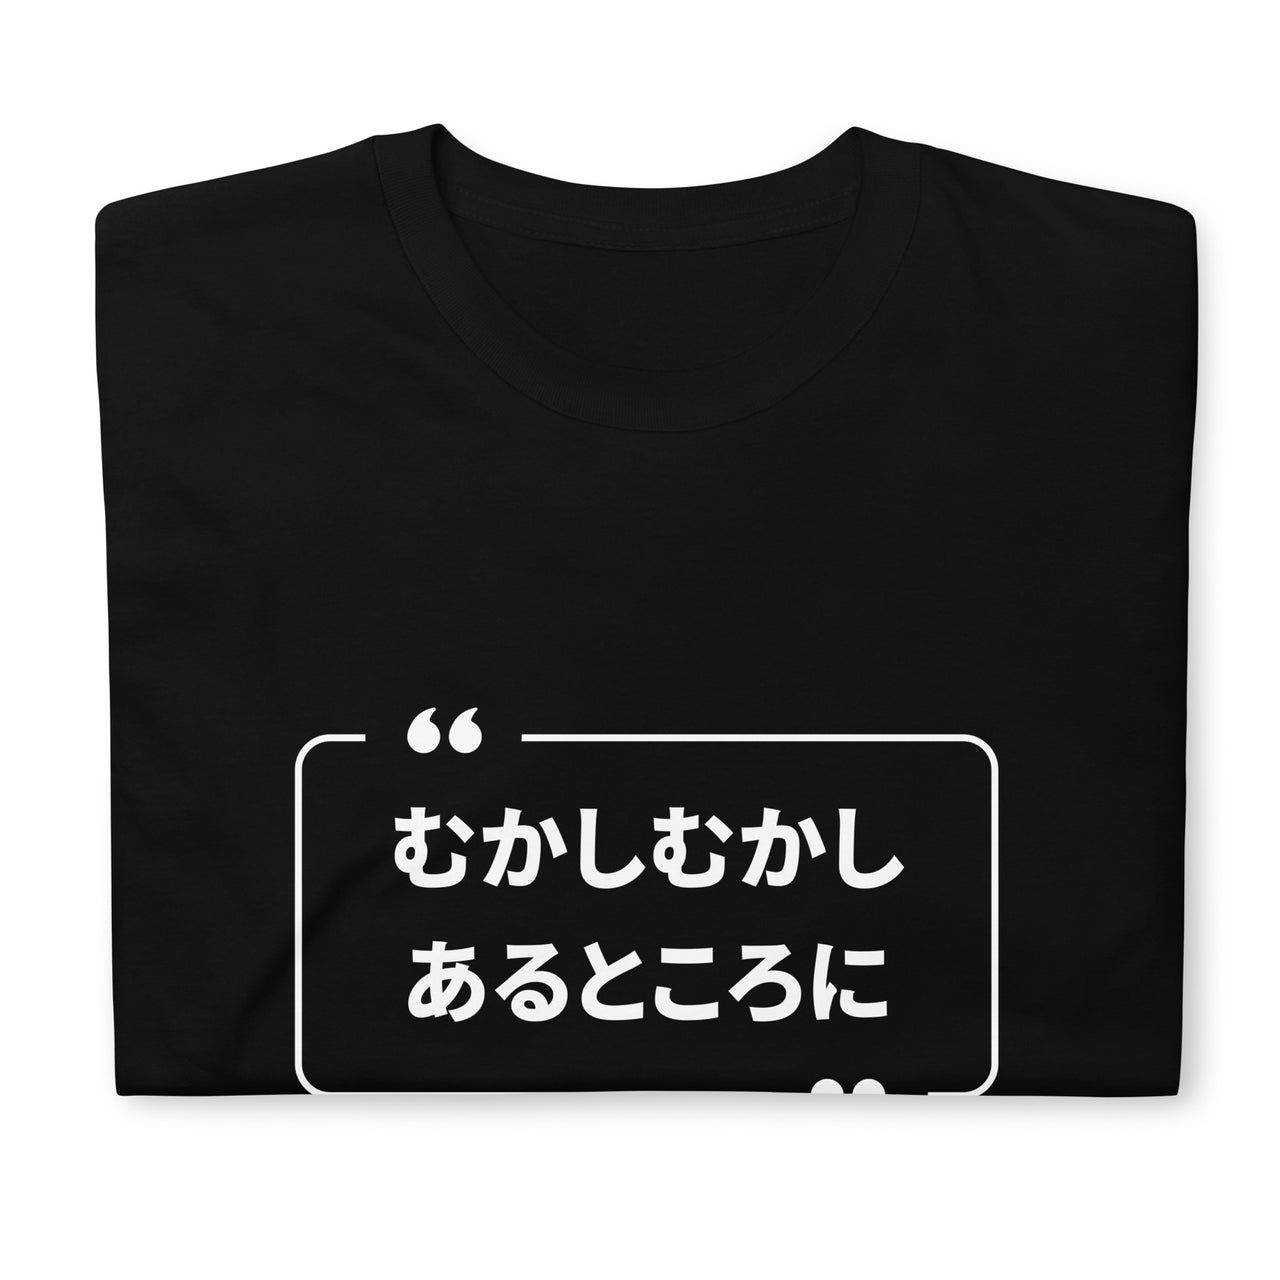 Mukashi Mukashi T-Shirt